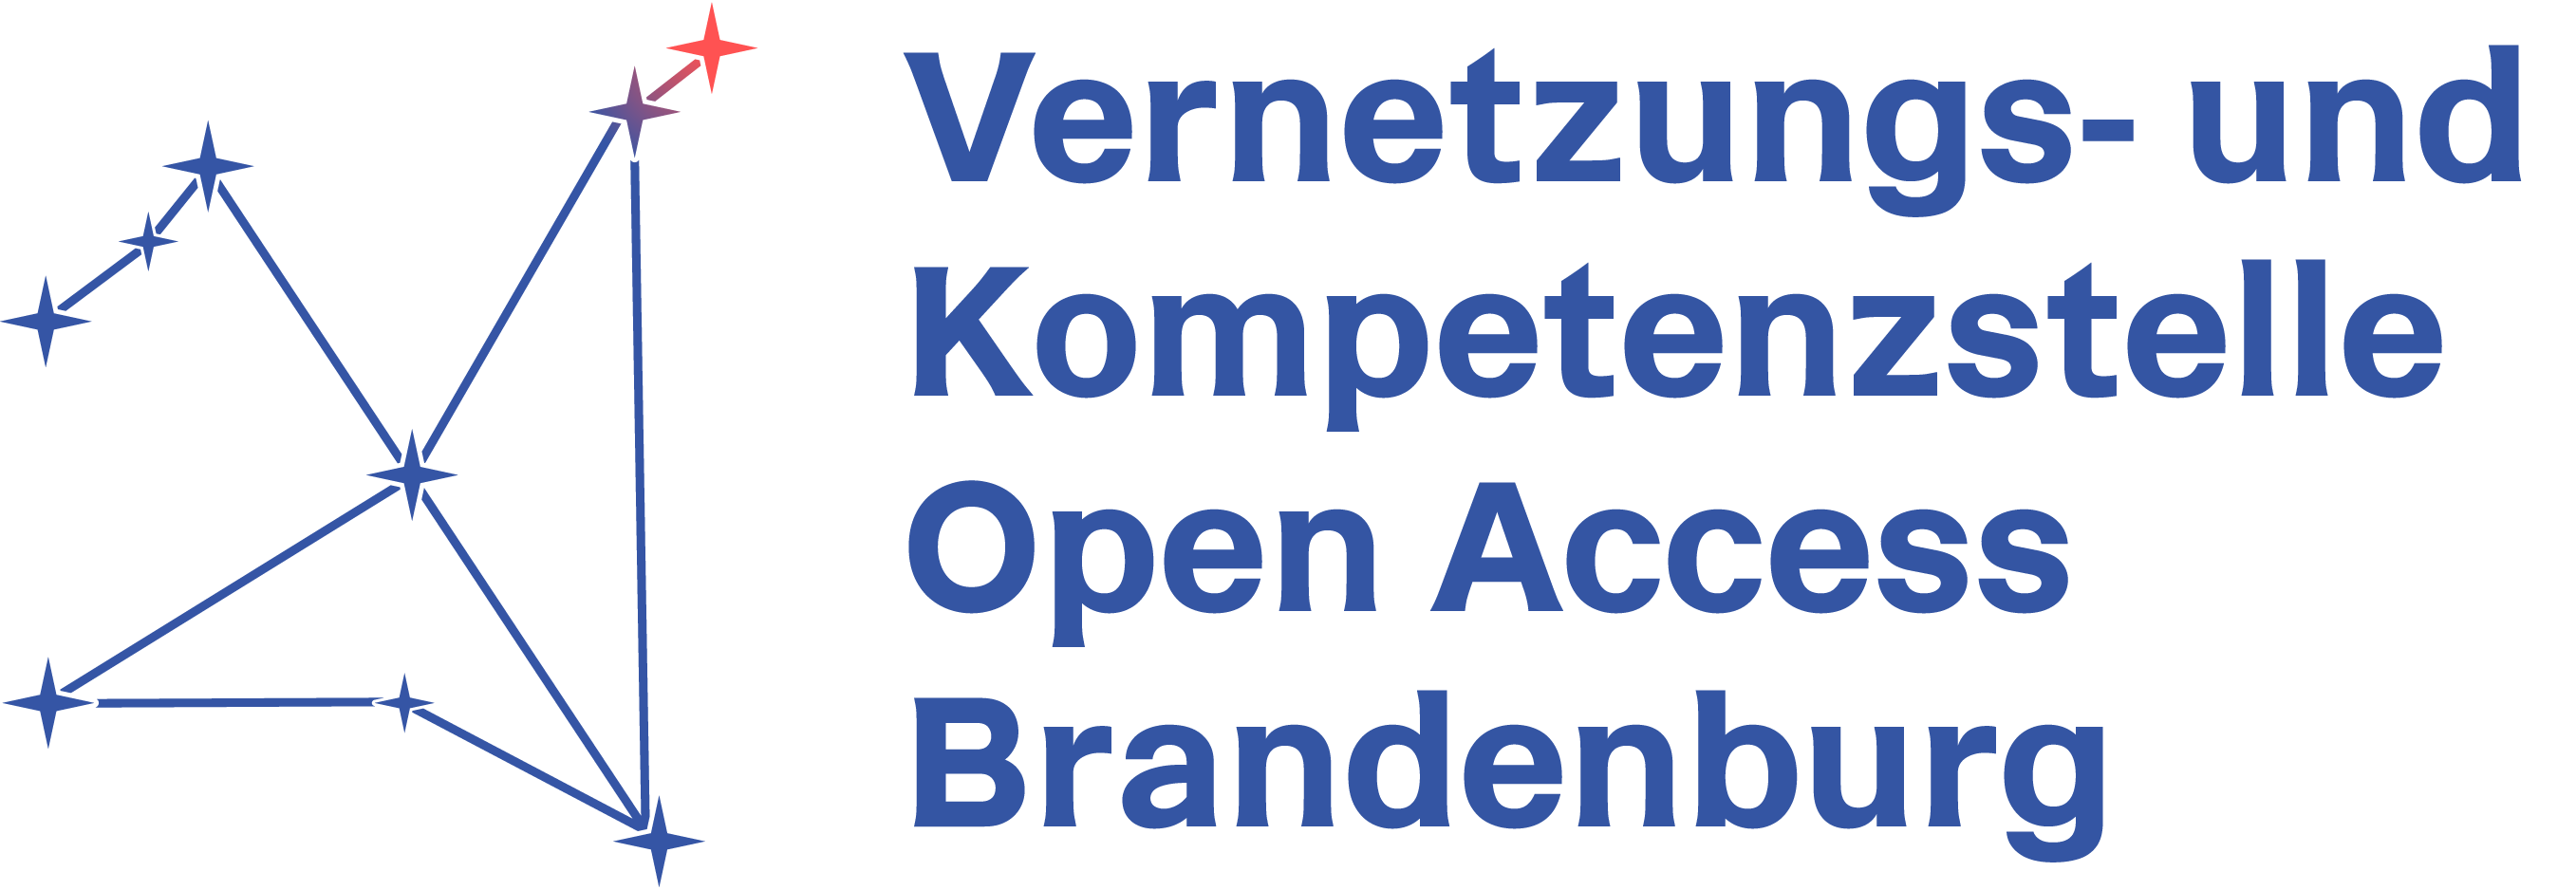 Bild-Textmarke Vernetzungs- und Kompetenzstelle Open Access Brandenburg